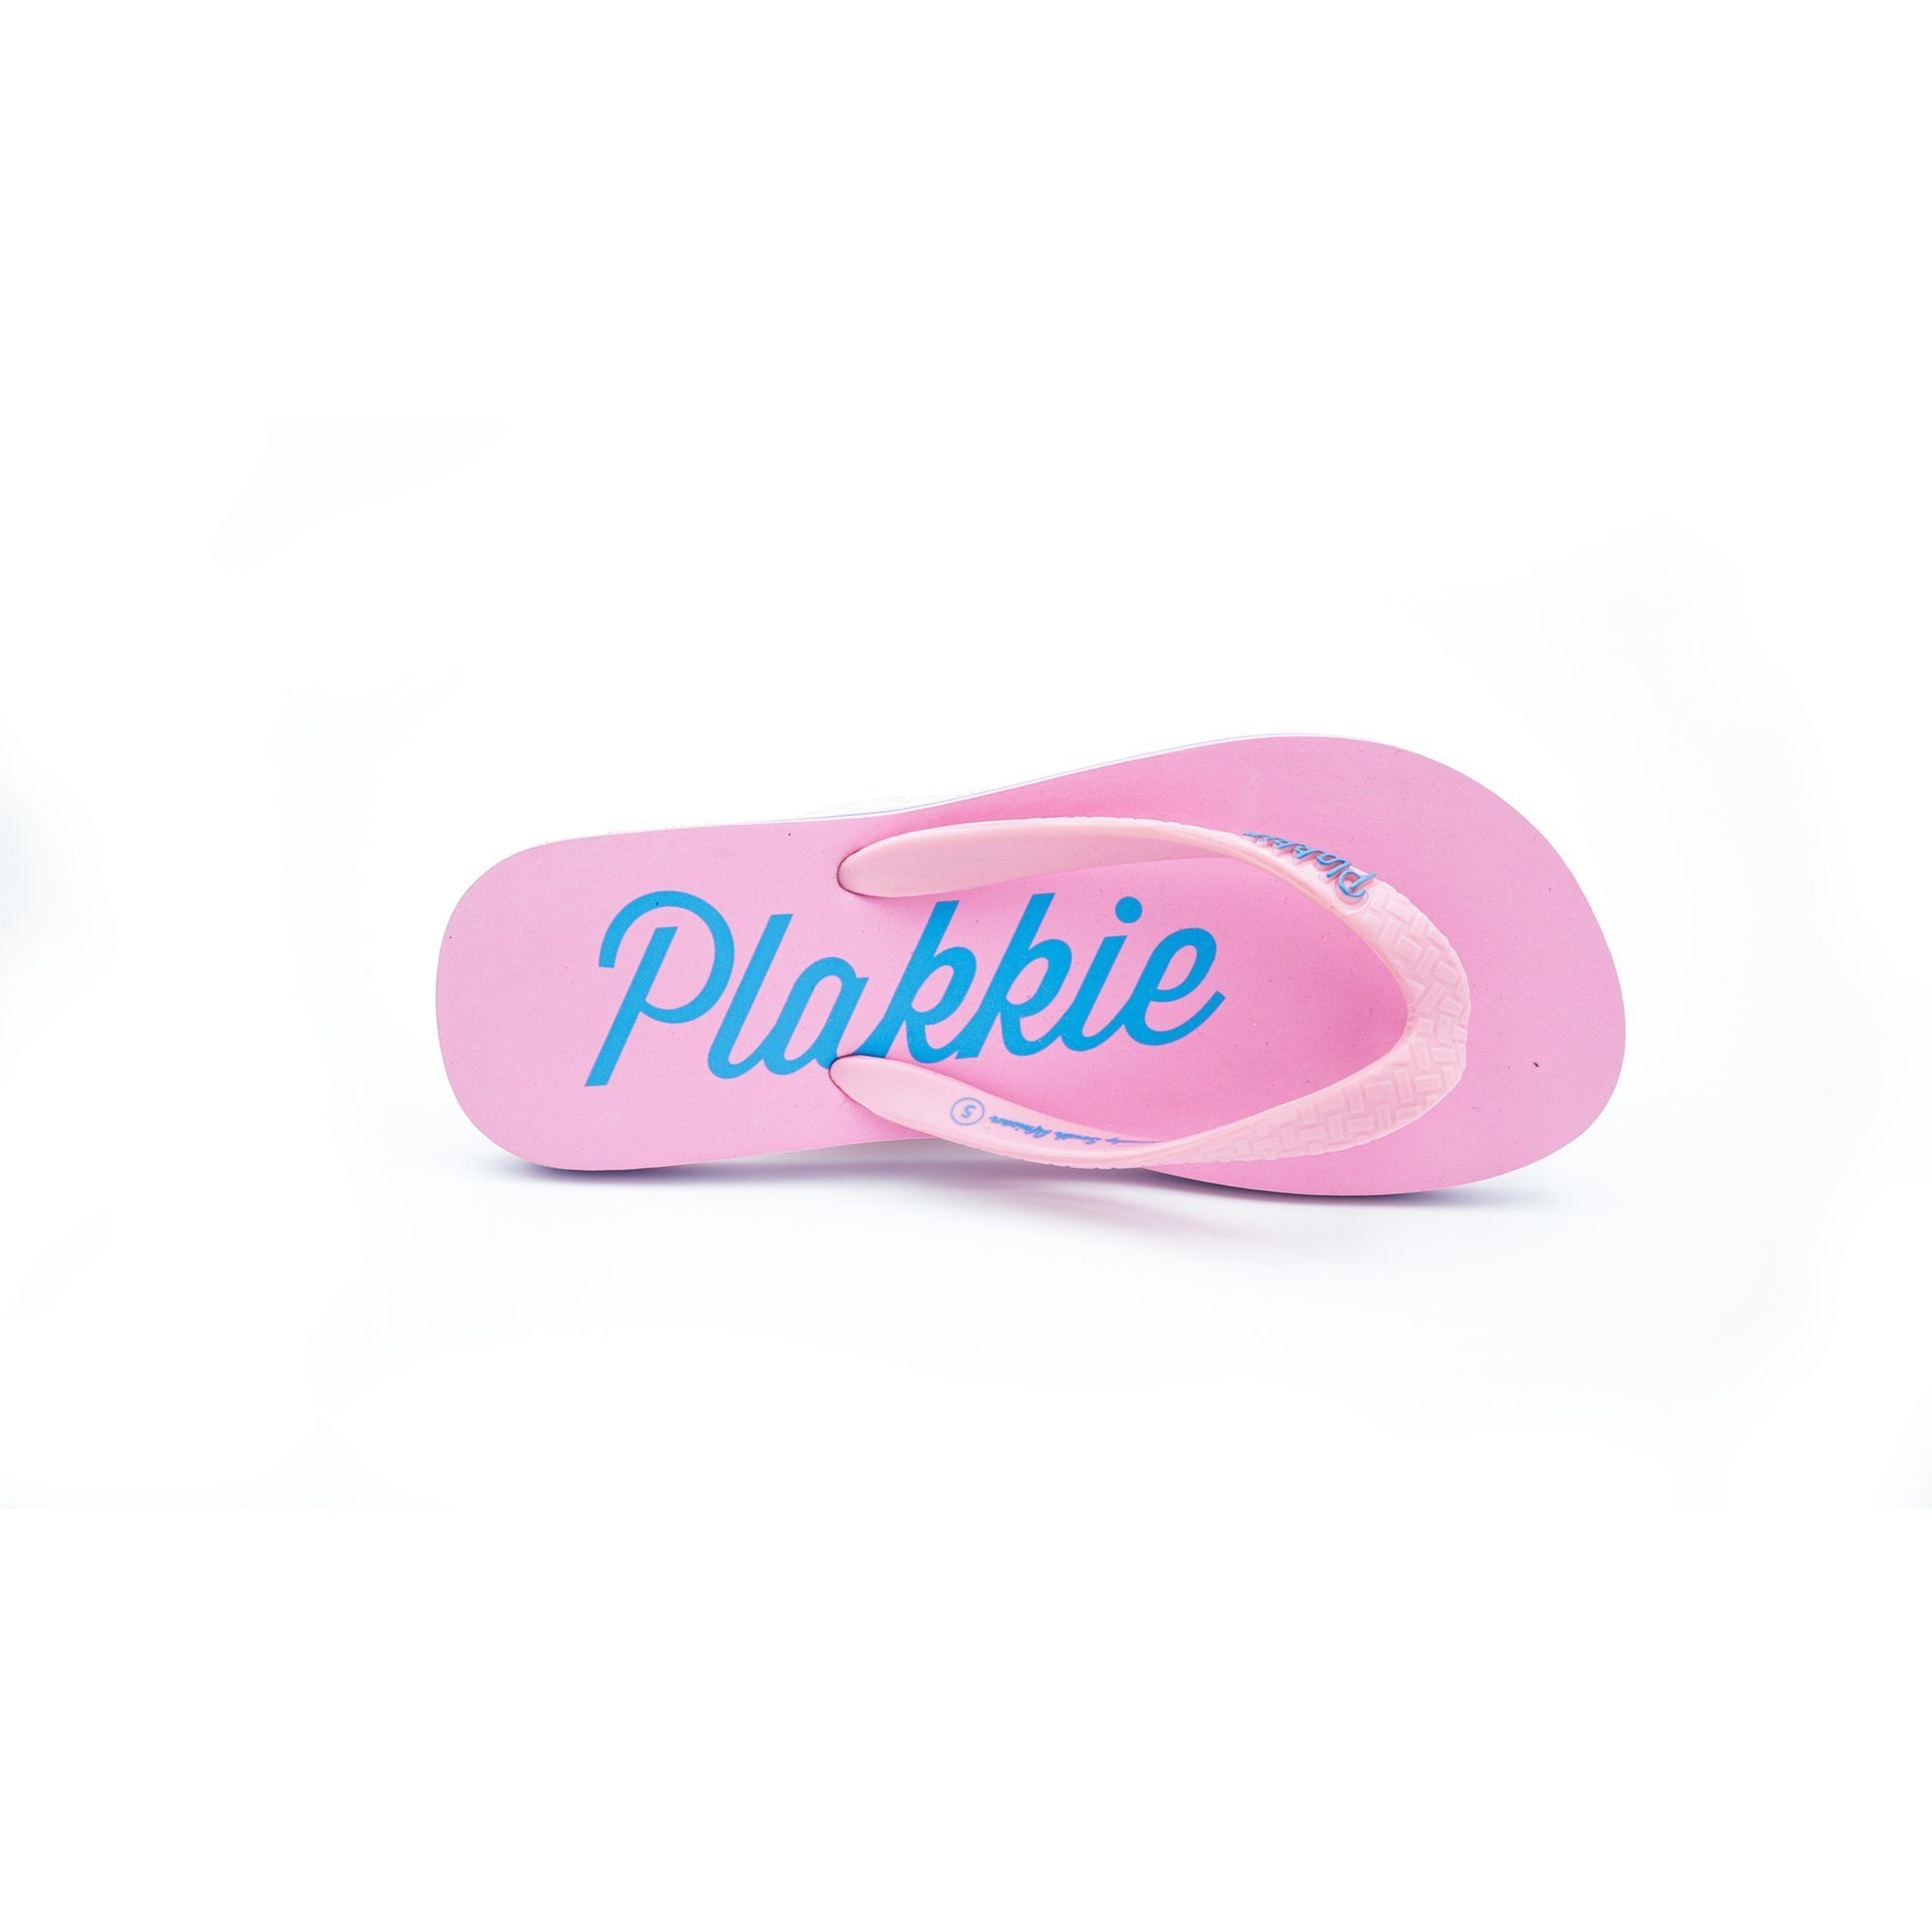 Plakkie Mabibi Unisex Flip Flops clothing & accessories Plakkie